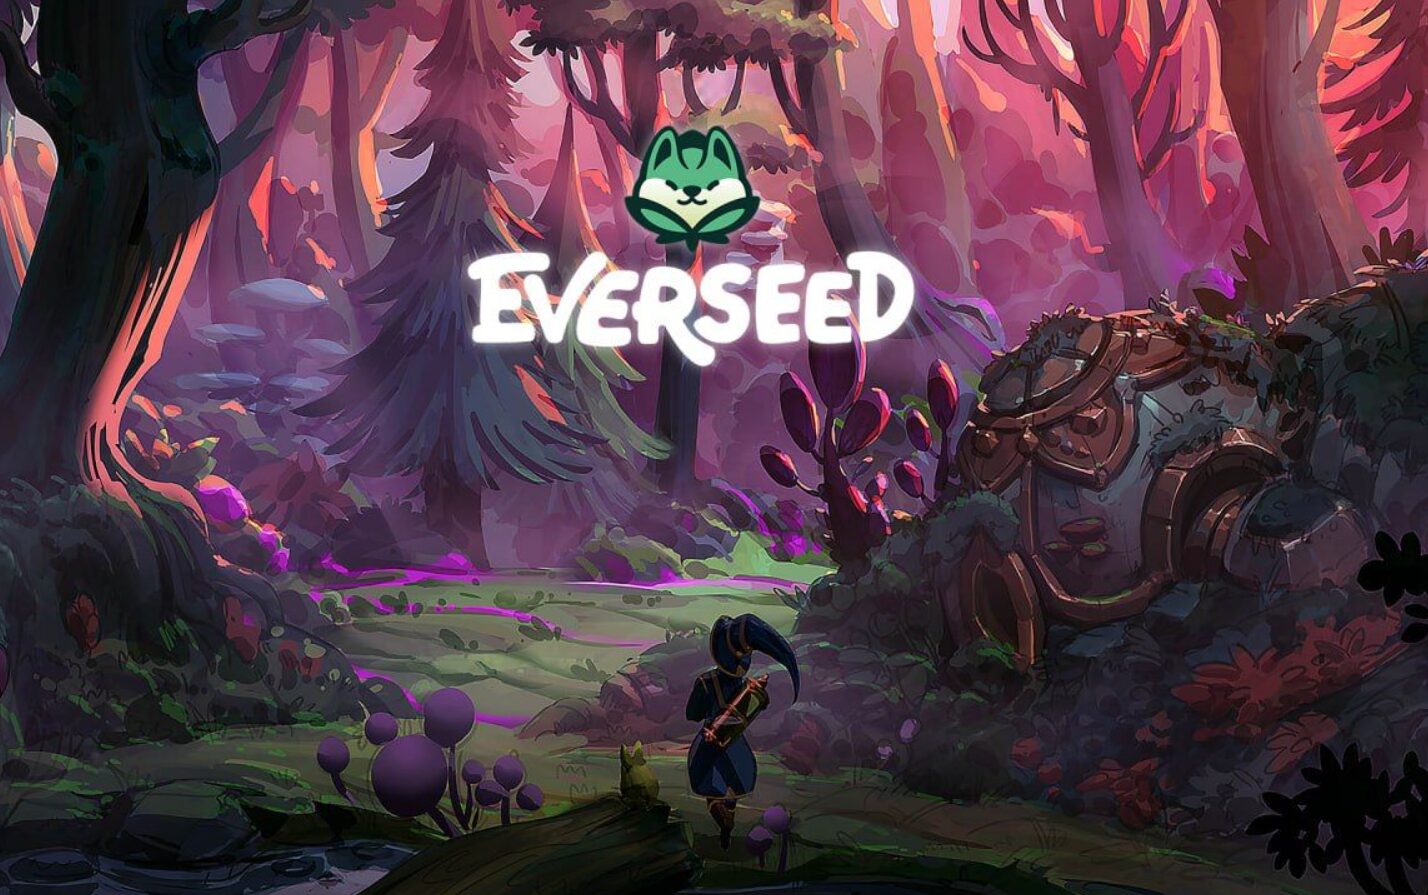 Everseed spouští otevřenou beta verzi s novými funkcemi a BTC odměnami